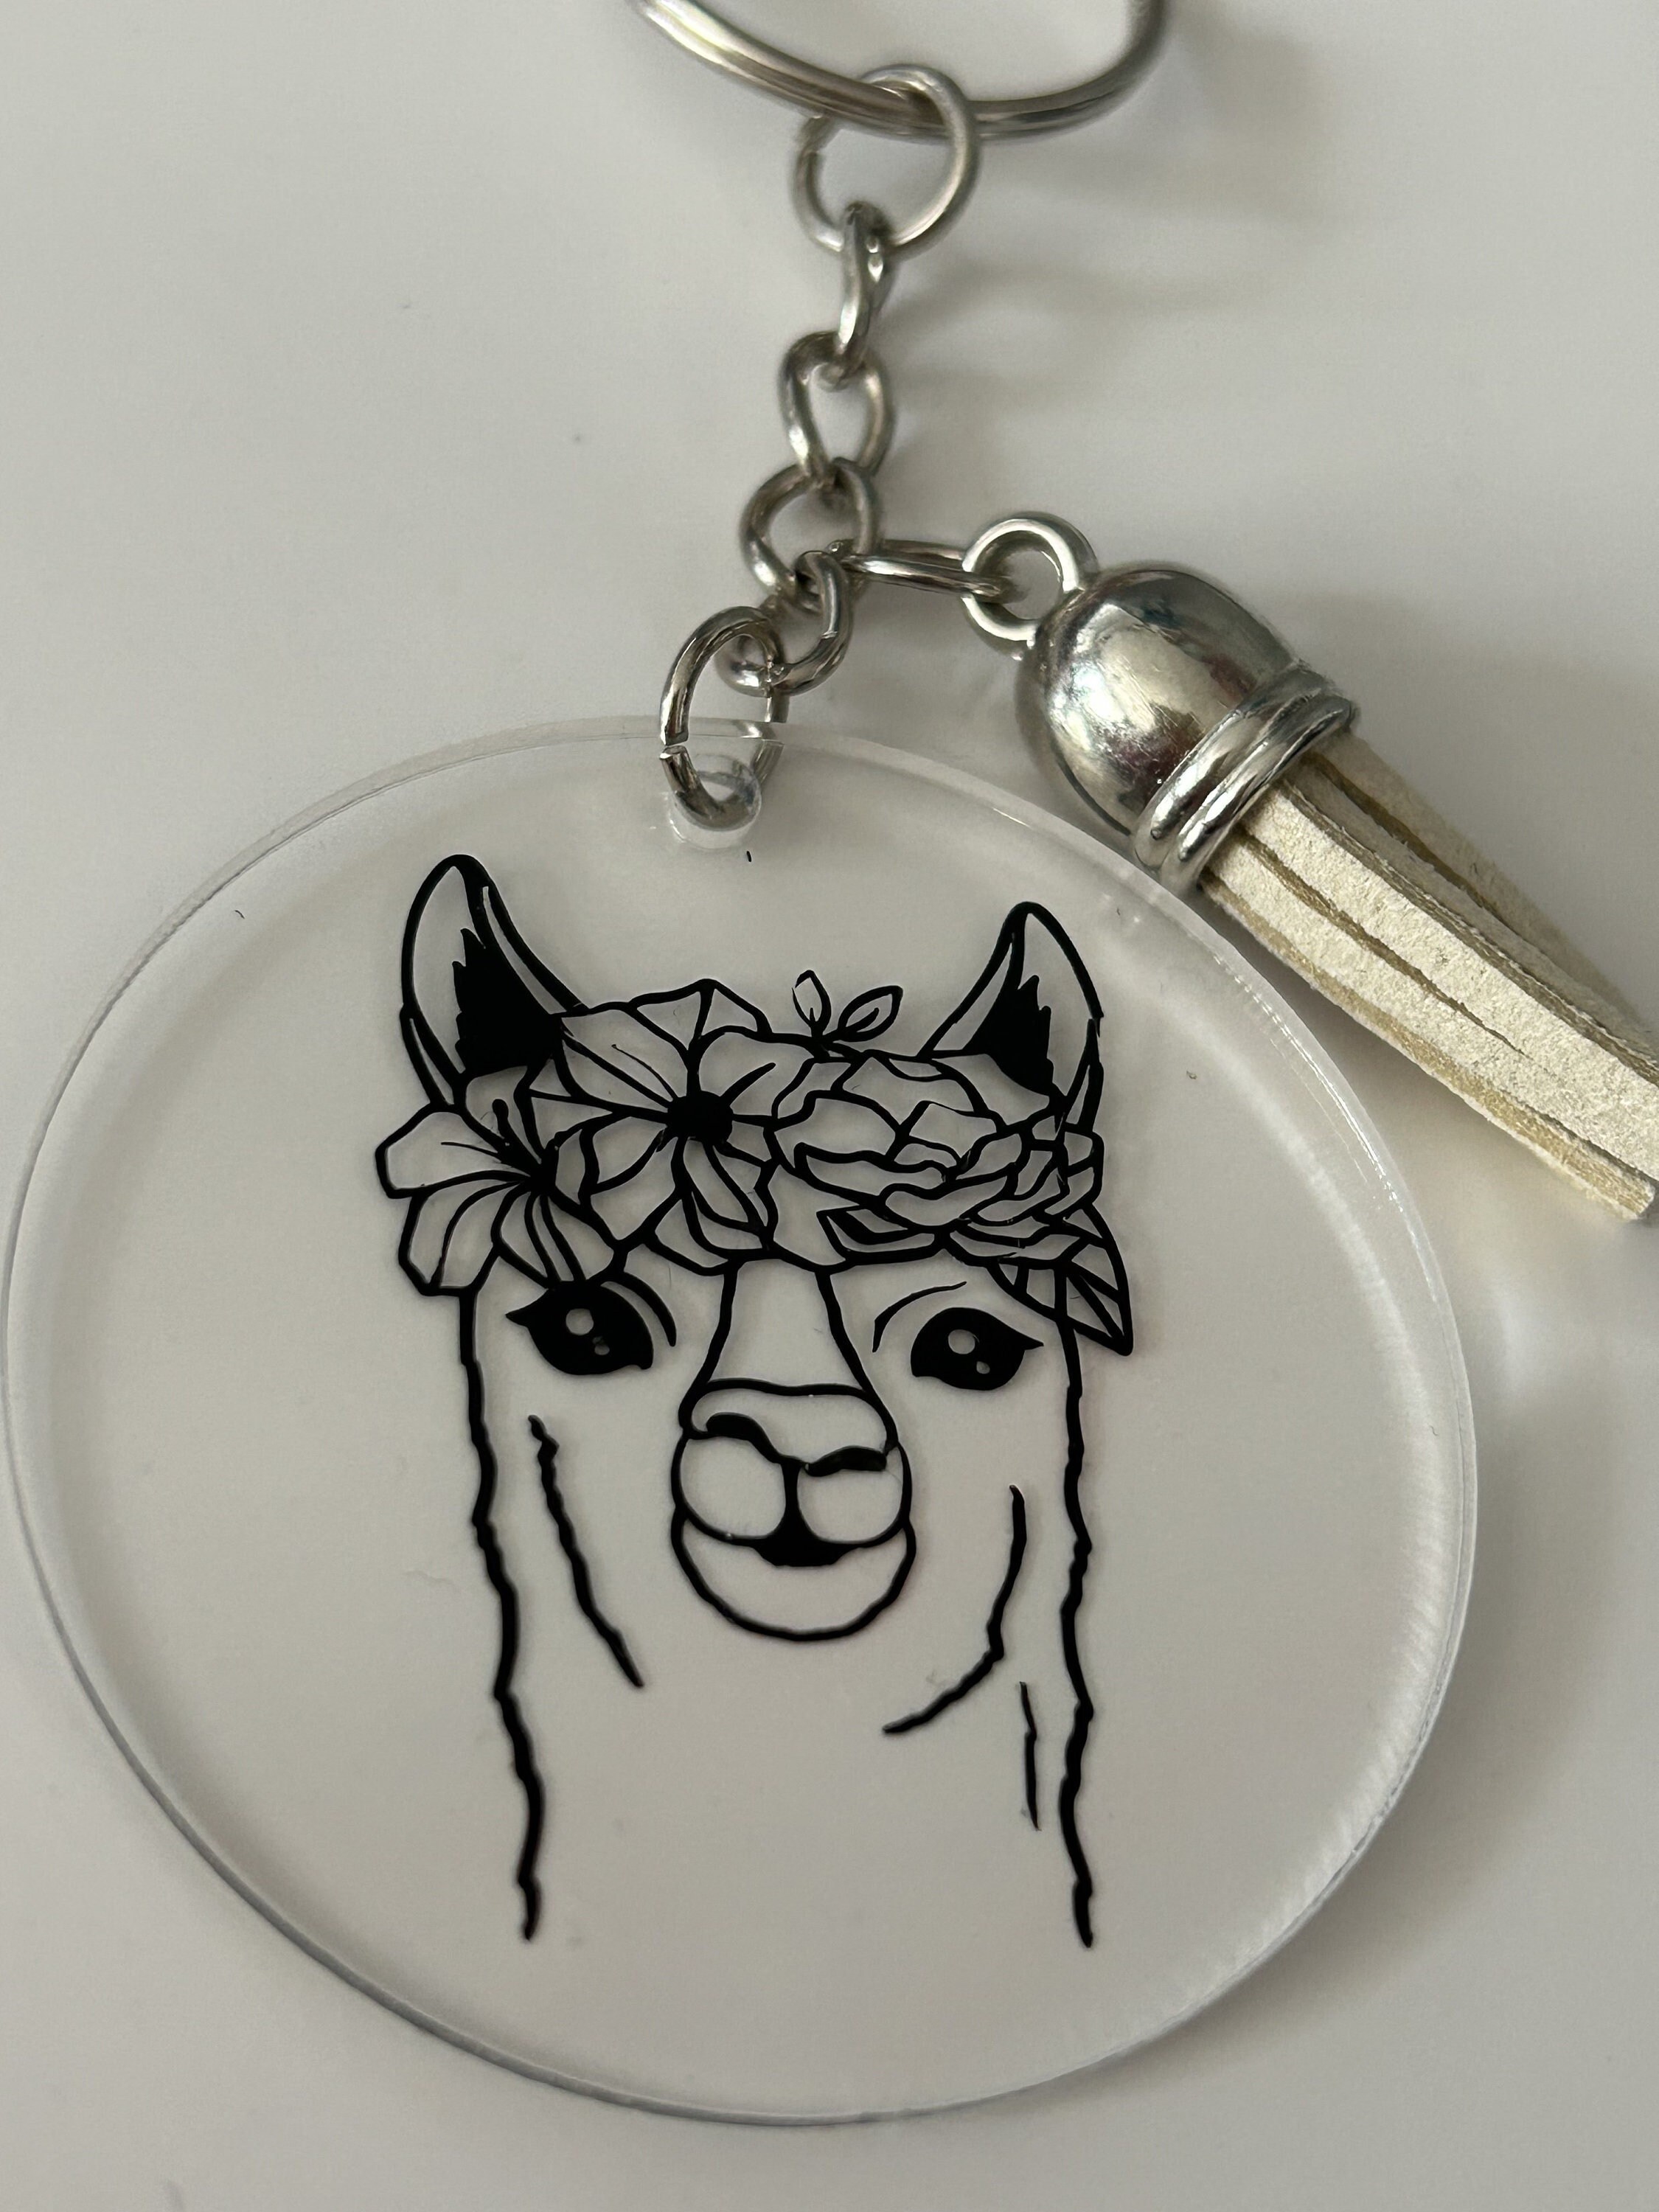 Alpaca Keychain – Cuyana